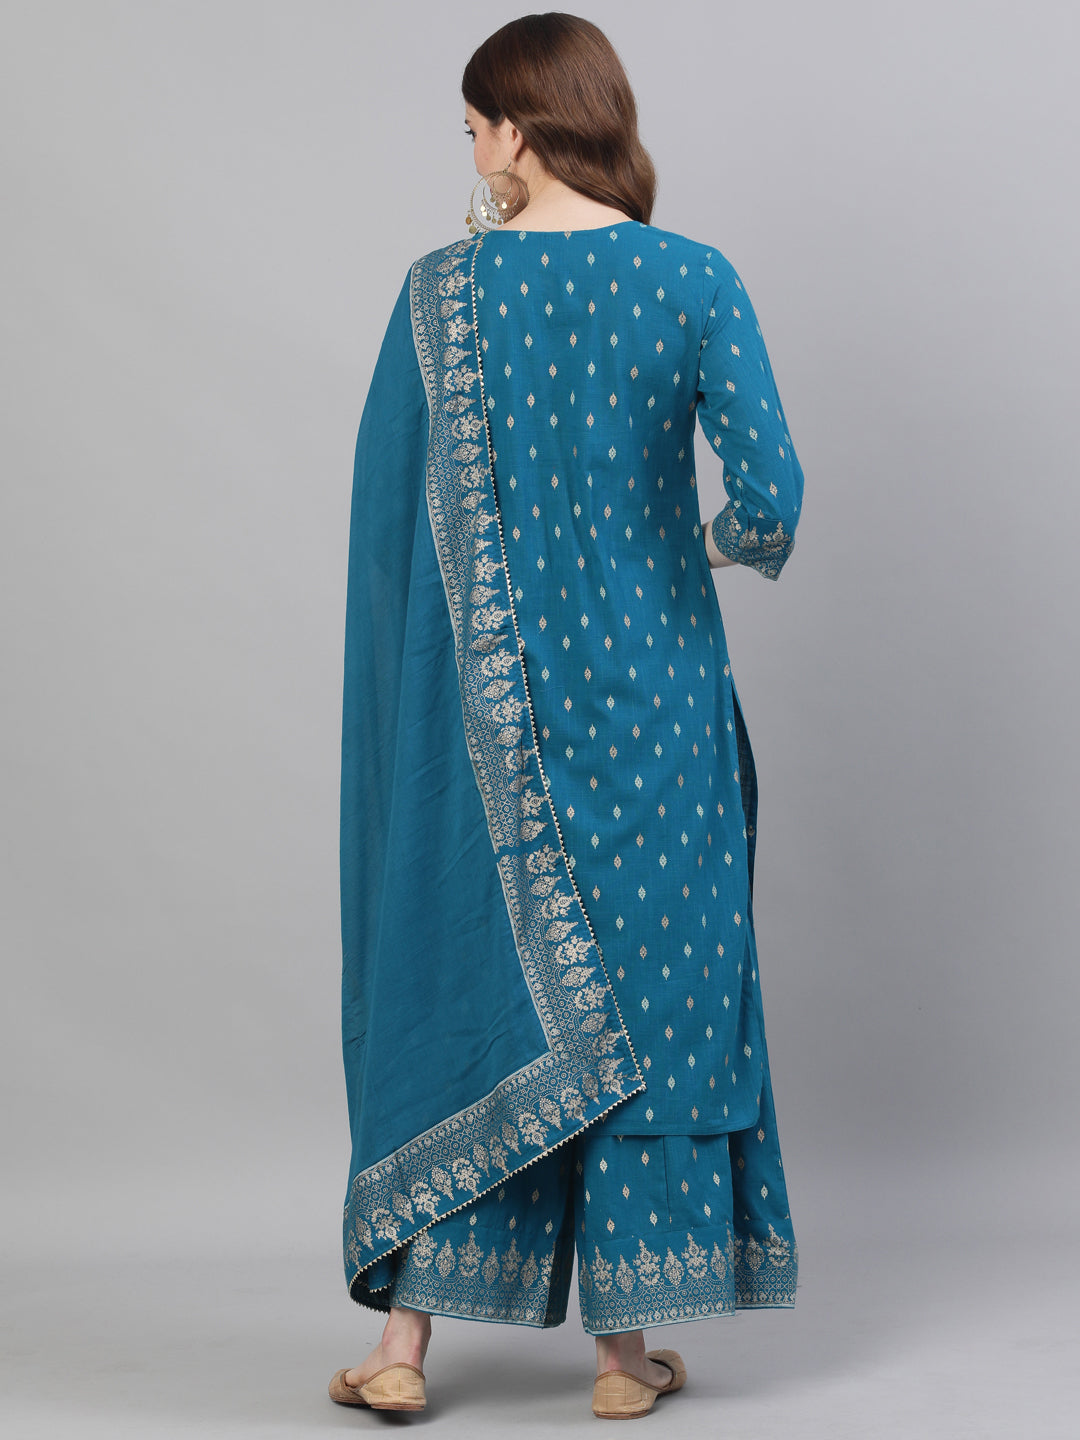 Ishin Women's Cotton Teal Yoke Design A-Line Kurta Sharara Dupatta Set